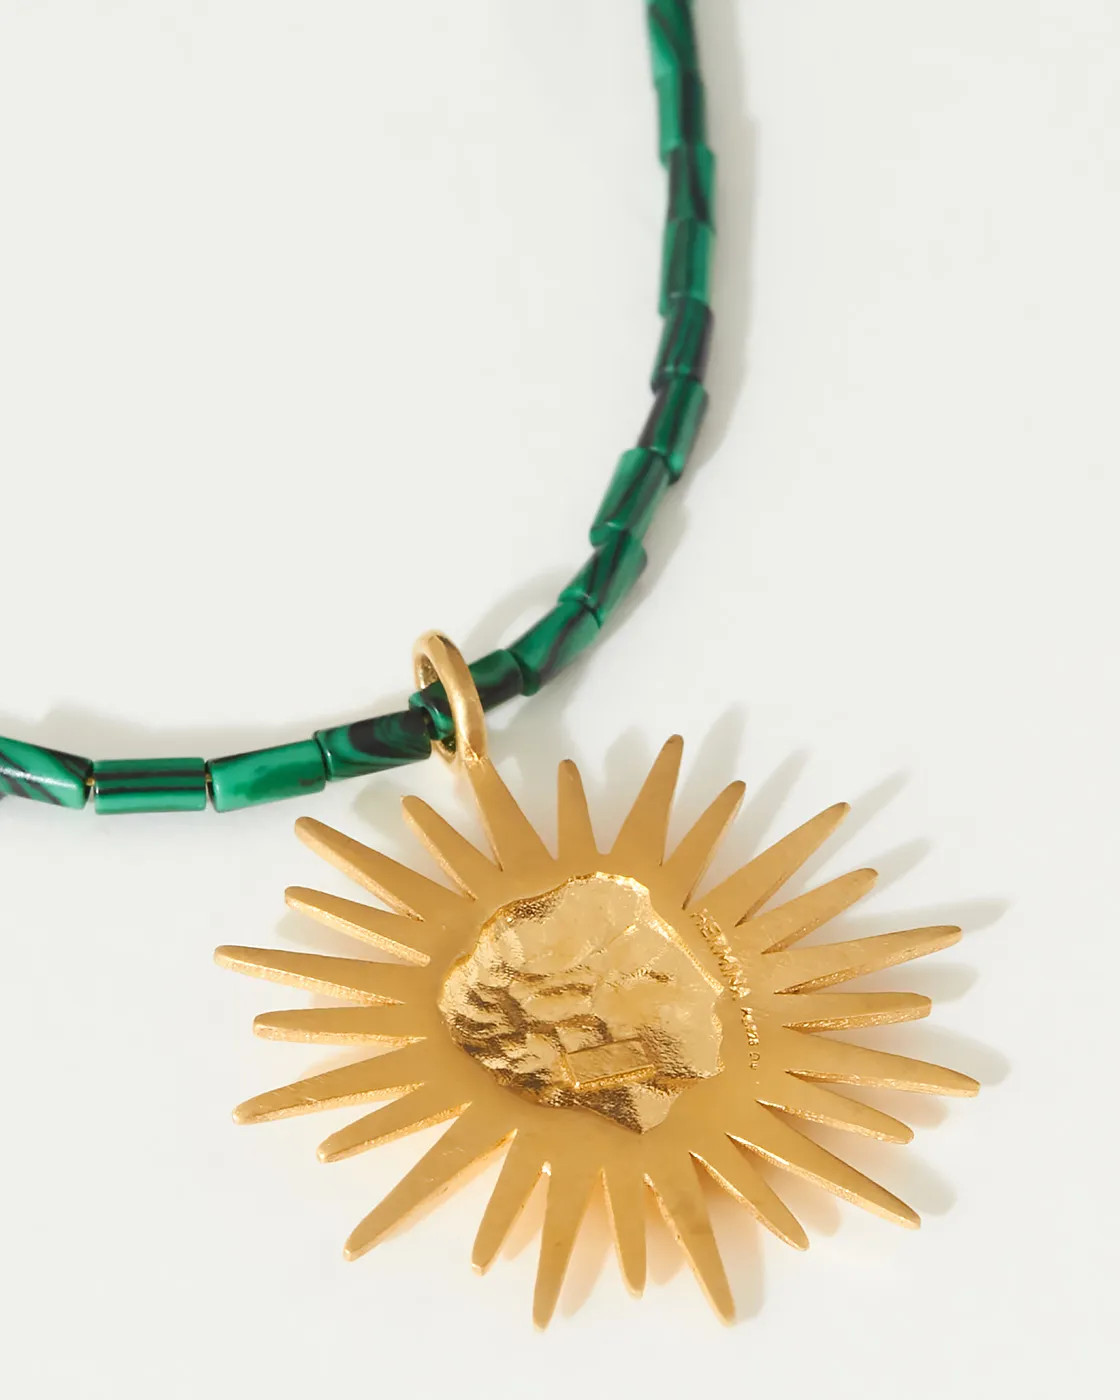 Sun Tarot Edelstein-Halskette mit vergoldetem Anhänger